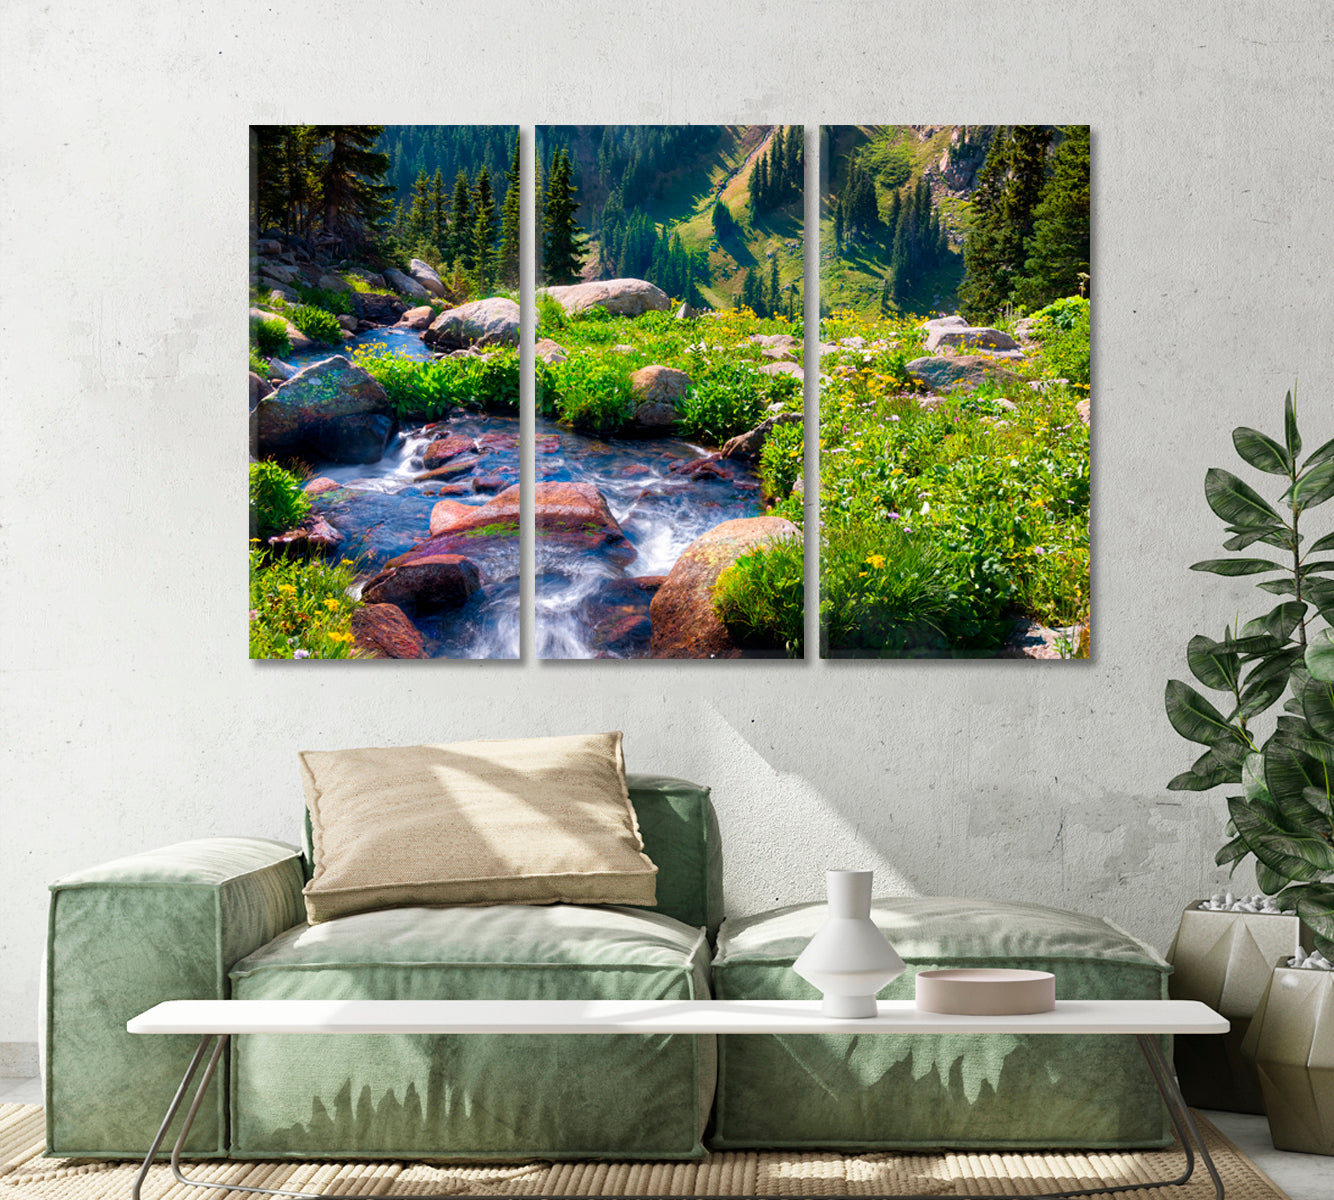 Nature Landscape with Boulder Creek River Canvas Print-Canvas Print-CetArt-1 Panel-24x16 inches-CetArt